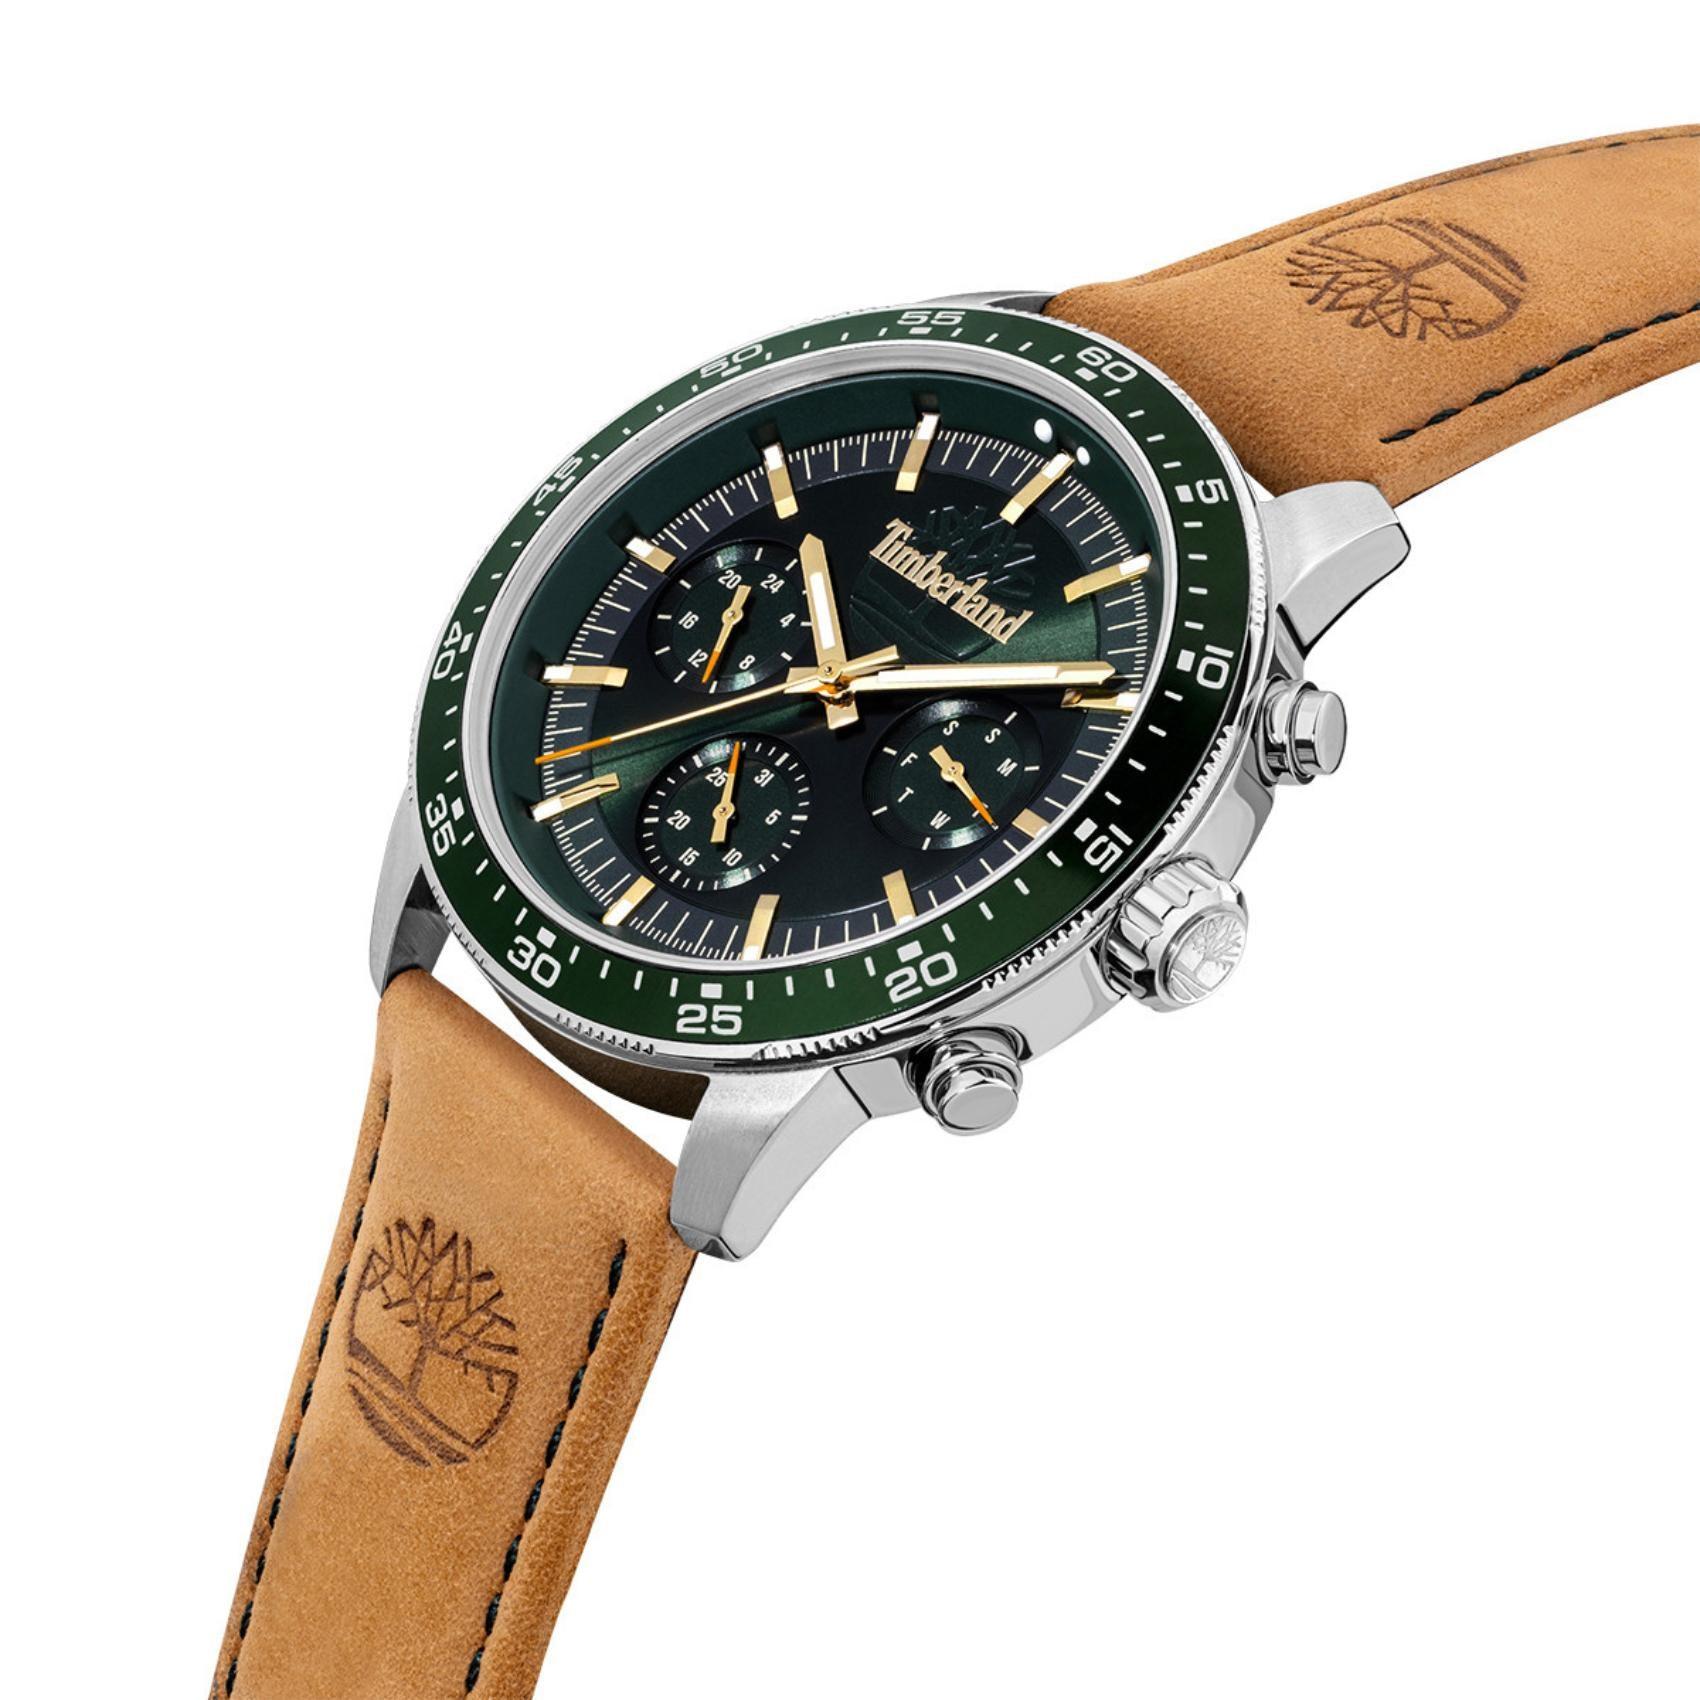 Ρολόι Timberland Parkman TDWGF0029001 με ταμπά δερμάτινο λουρί, πράσινο καντράν με ένδειξη ημερομηνίας και ημέρας και κάσα διαμέτρου 44mm.